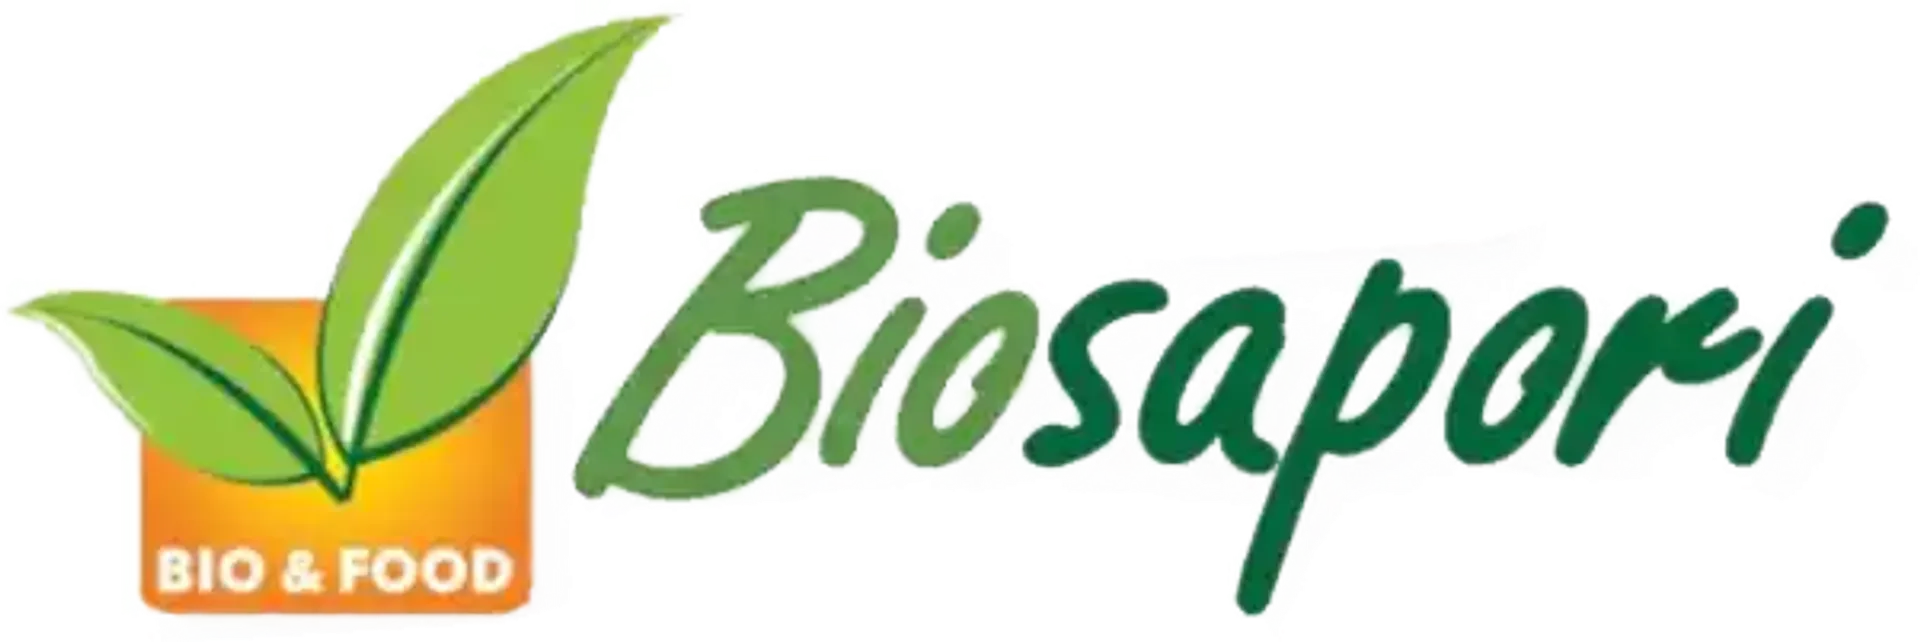 BIOSAPORI logo